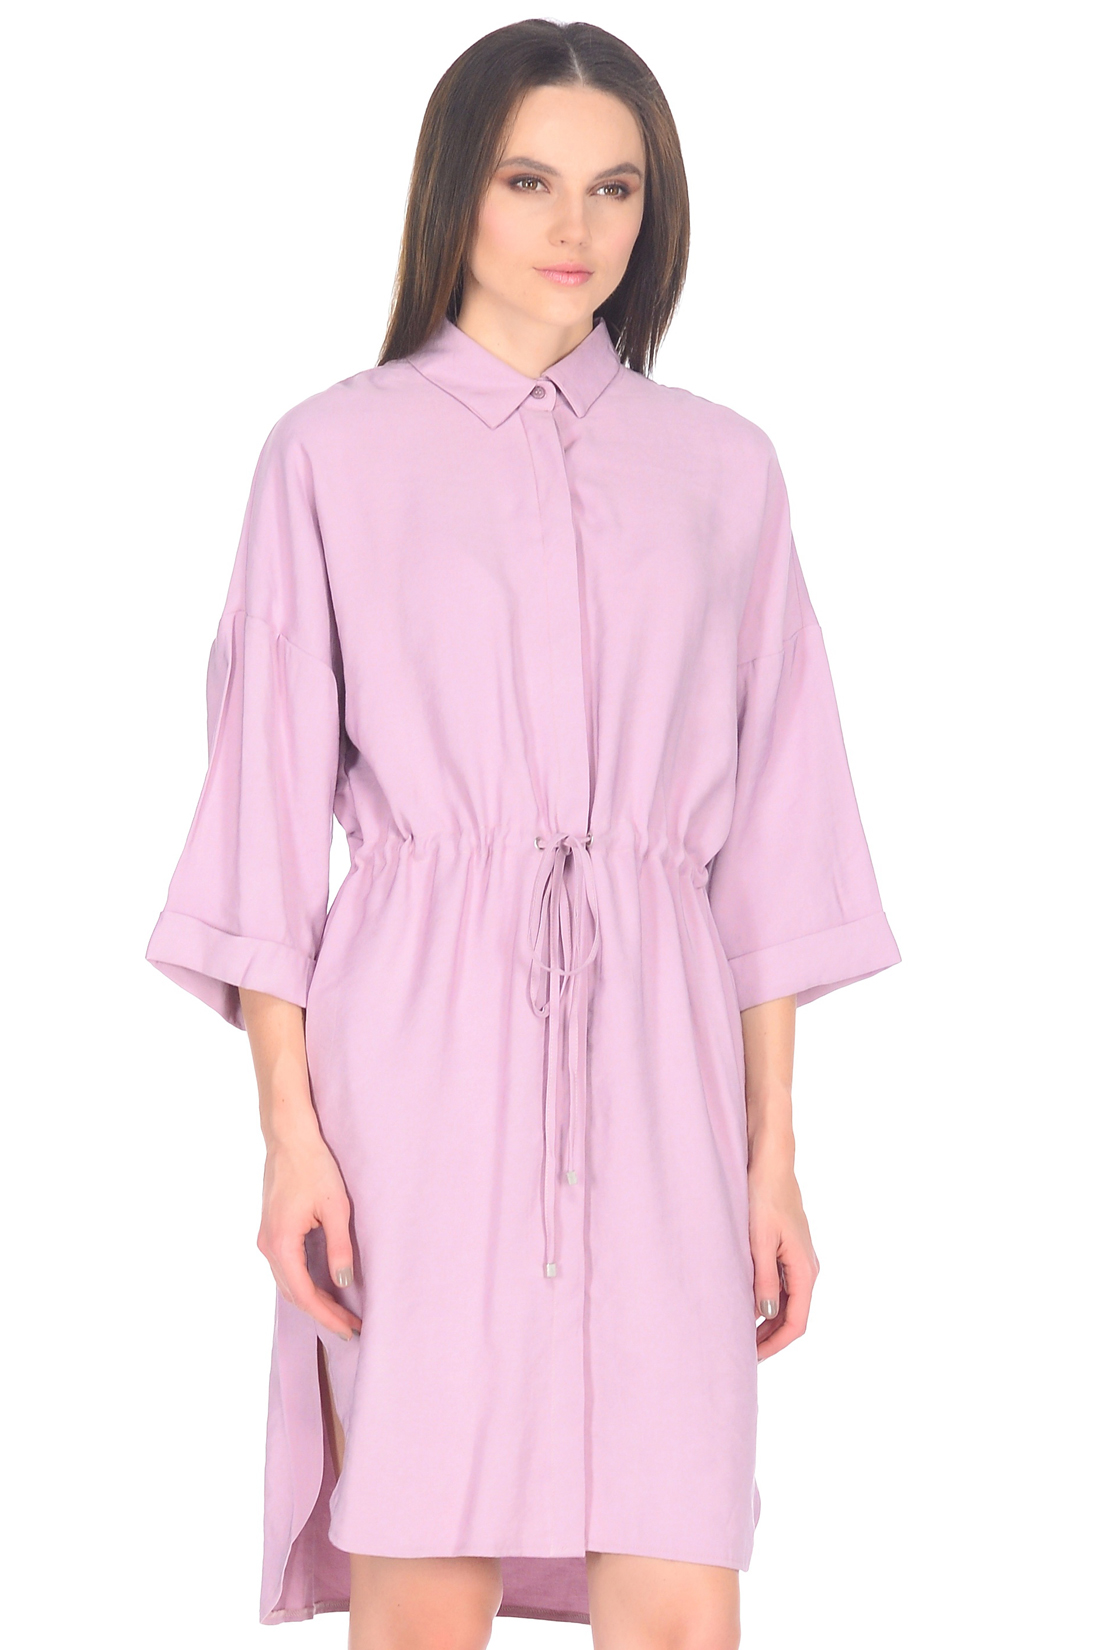 Платье-рубашка с потайной застёжкой (арт. baon B458019), размер M, цвет розовый Платье-рубашка с потайной застёжкой (арт. baon B458019) - фото 3